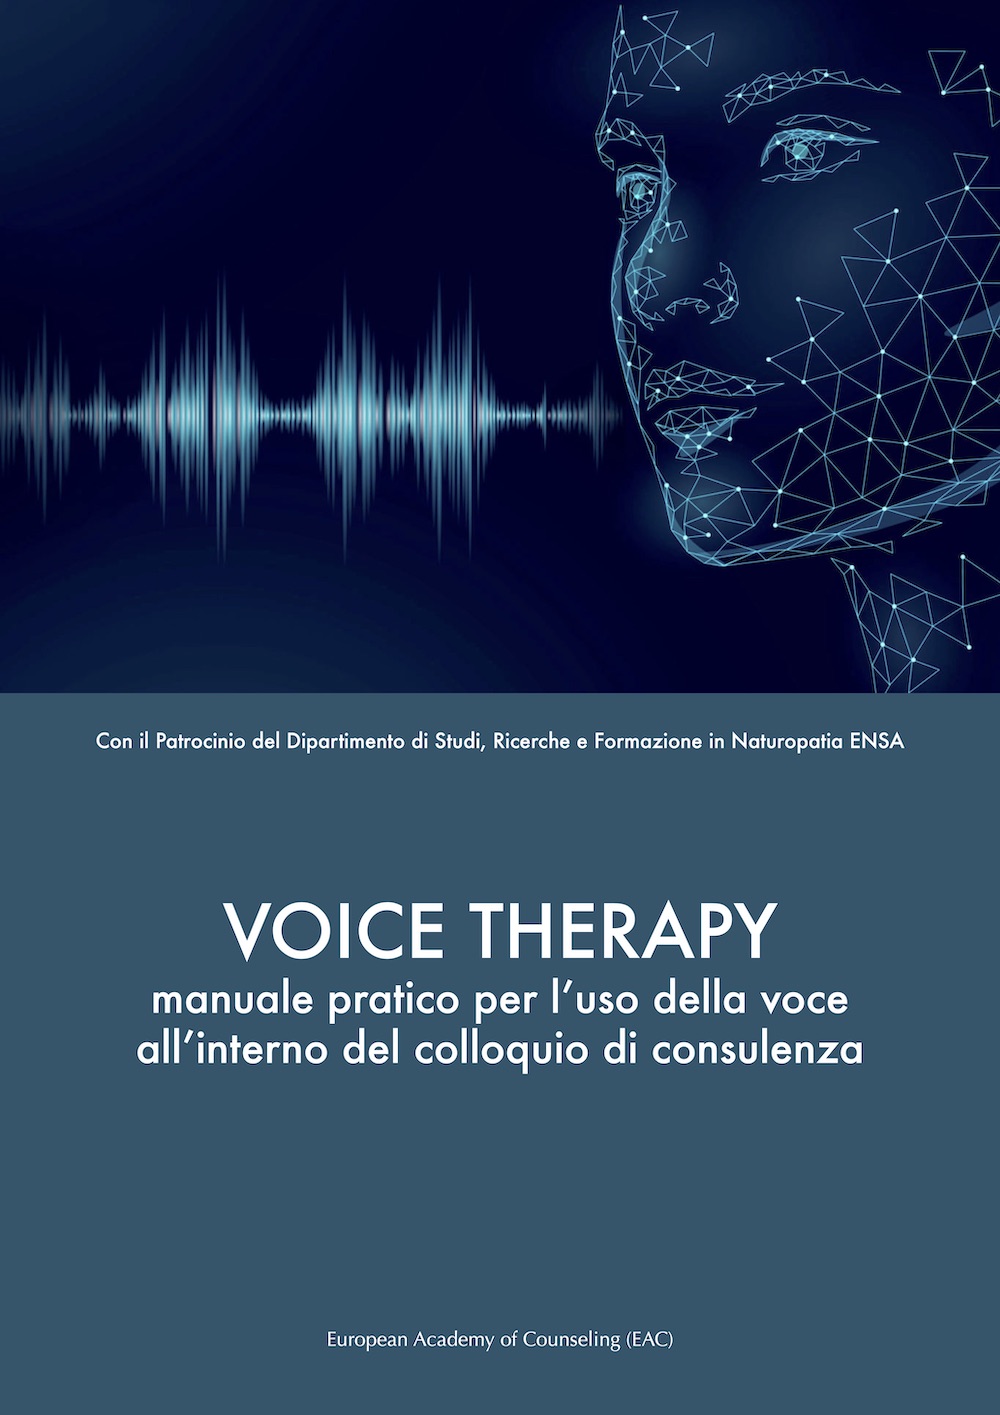 manuale di Voice therapy